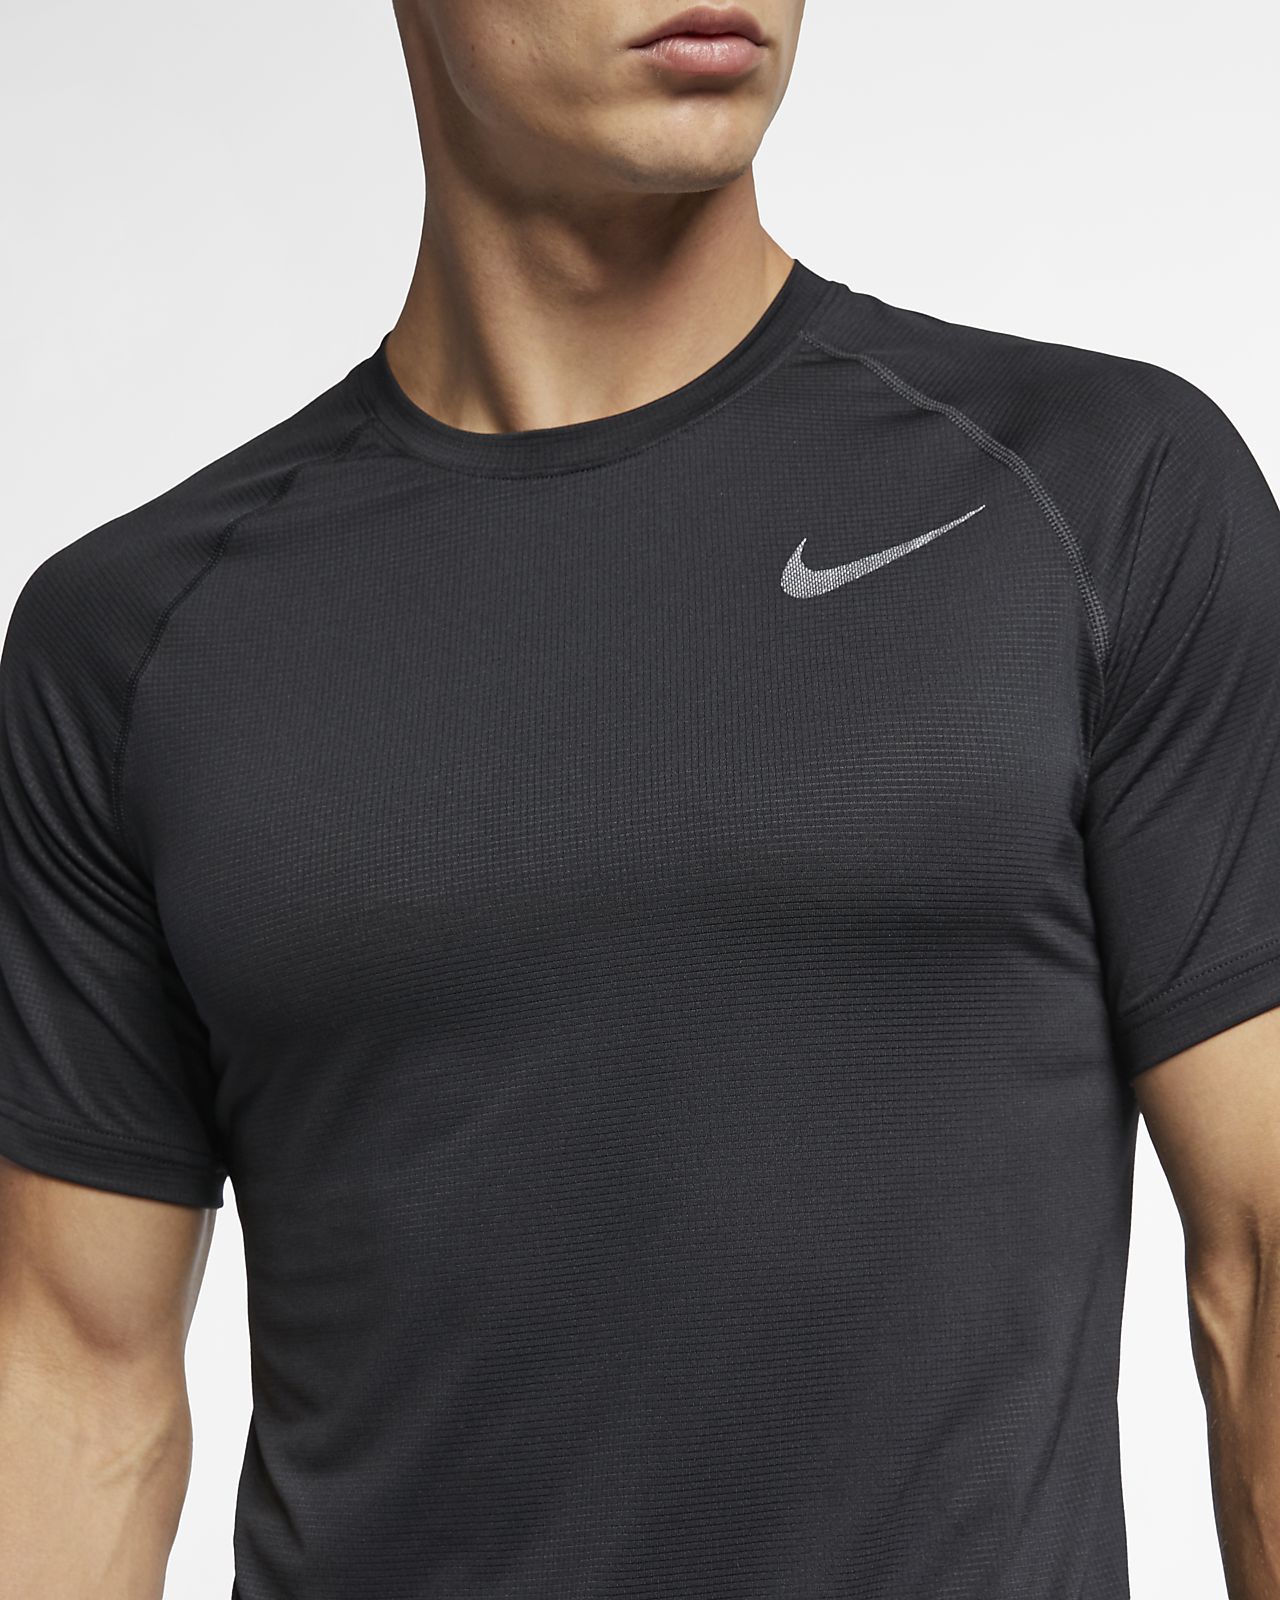 Nike Men's Breathe Pro T Shirt